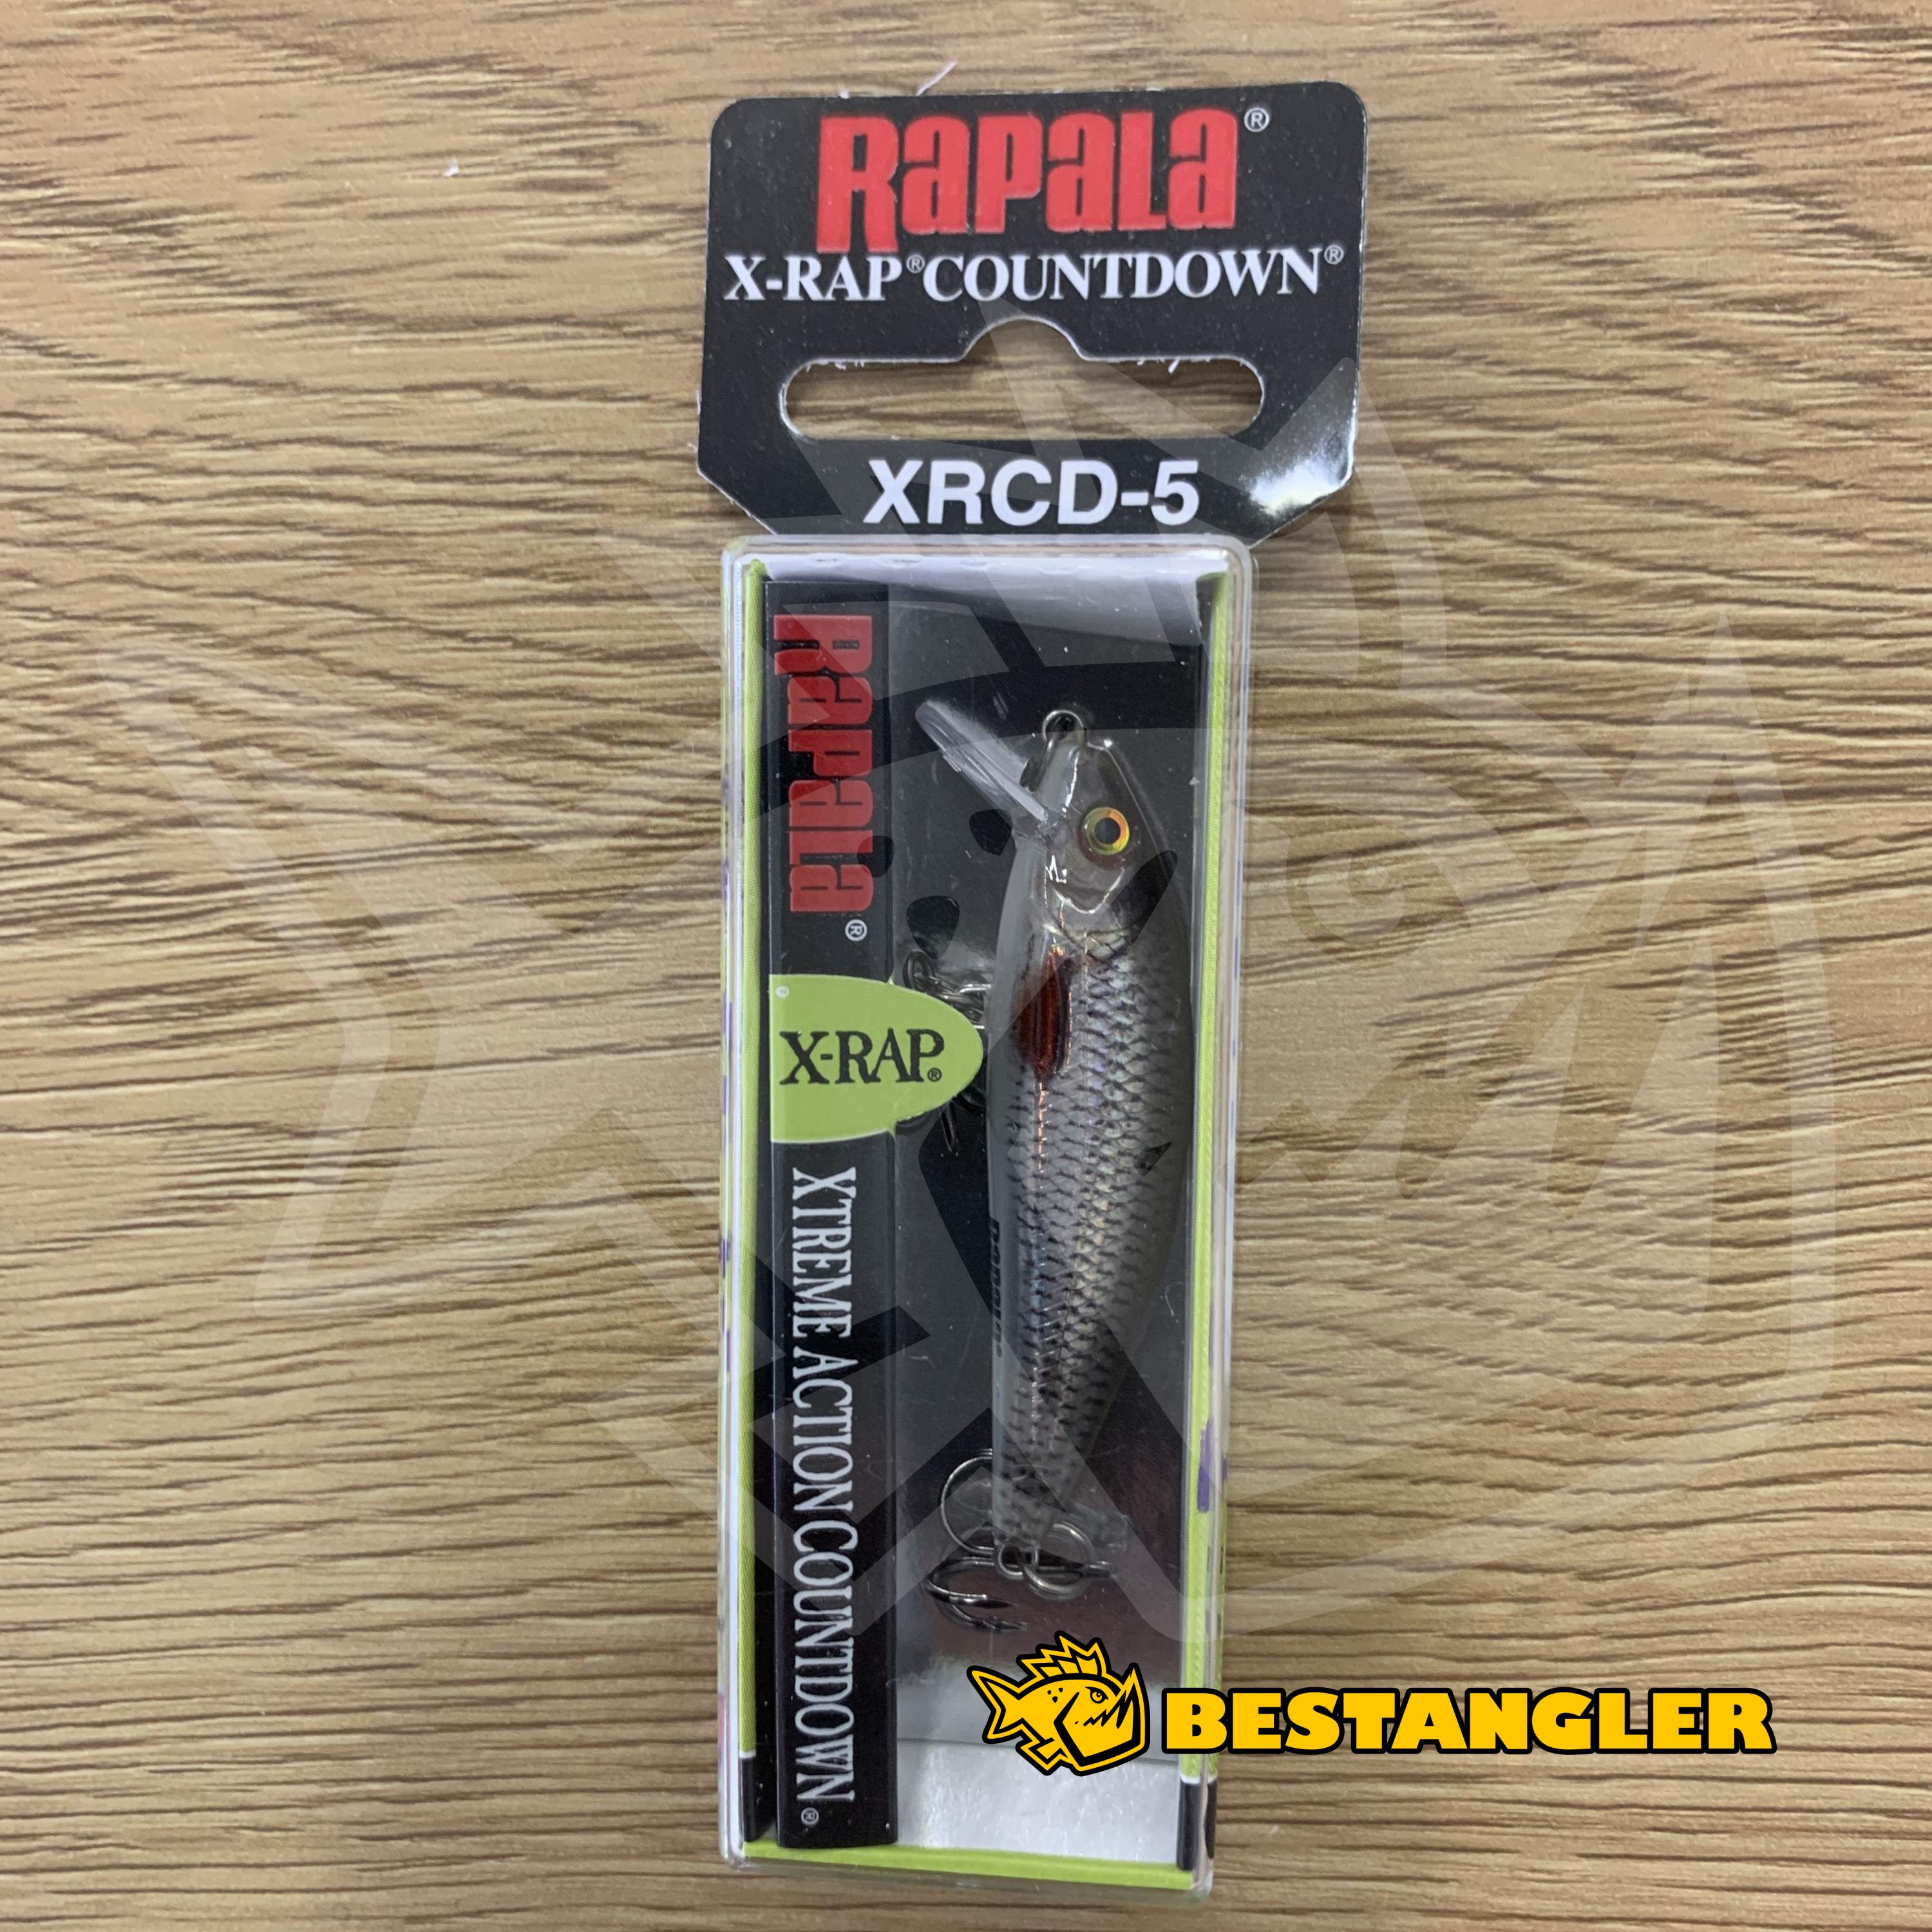 Rapala X-Rap Countdown 05 Live Roach